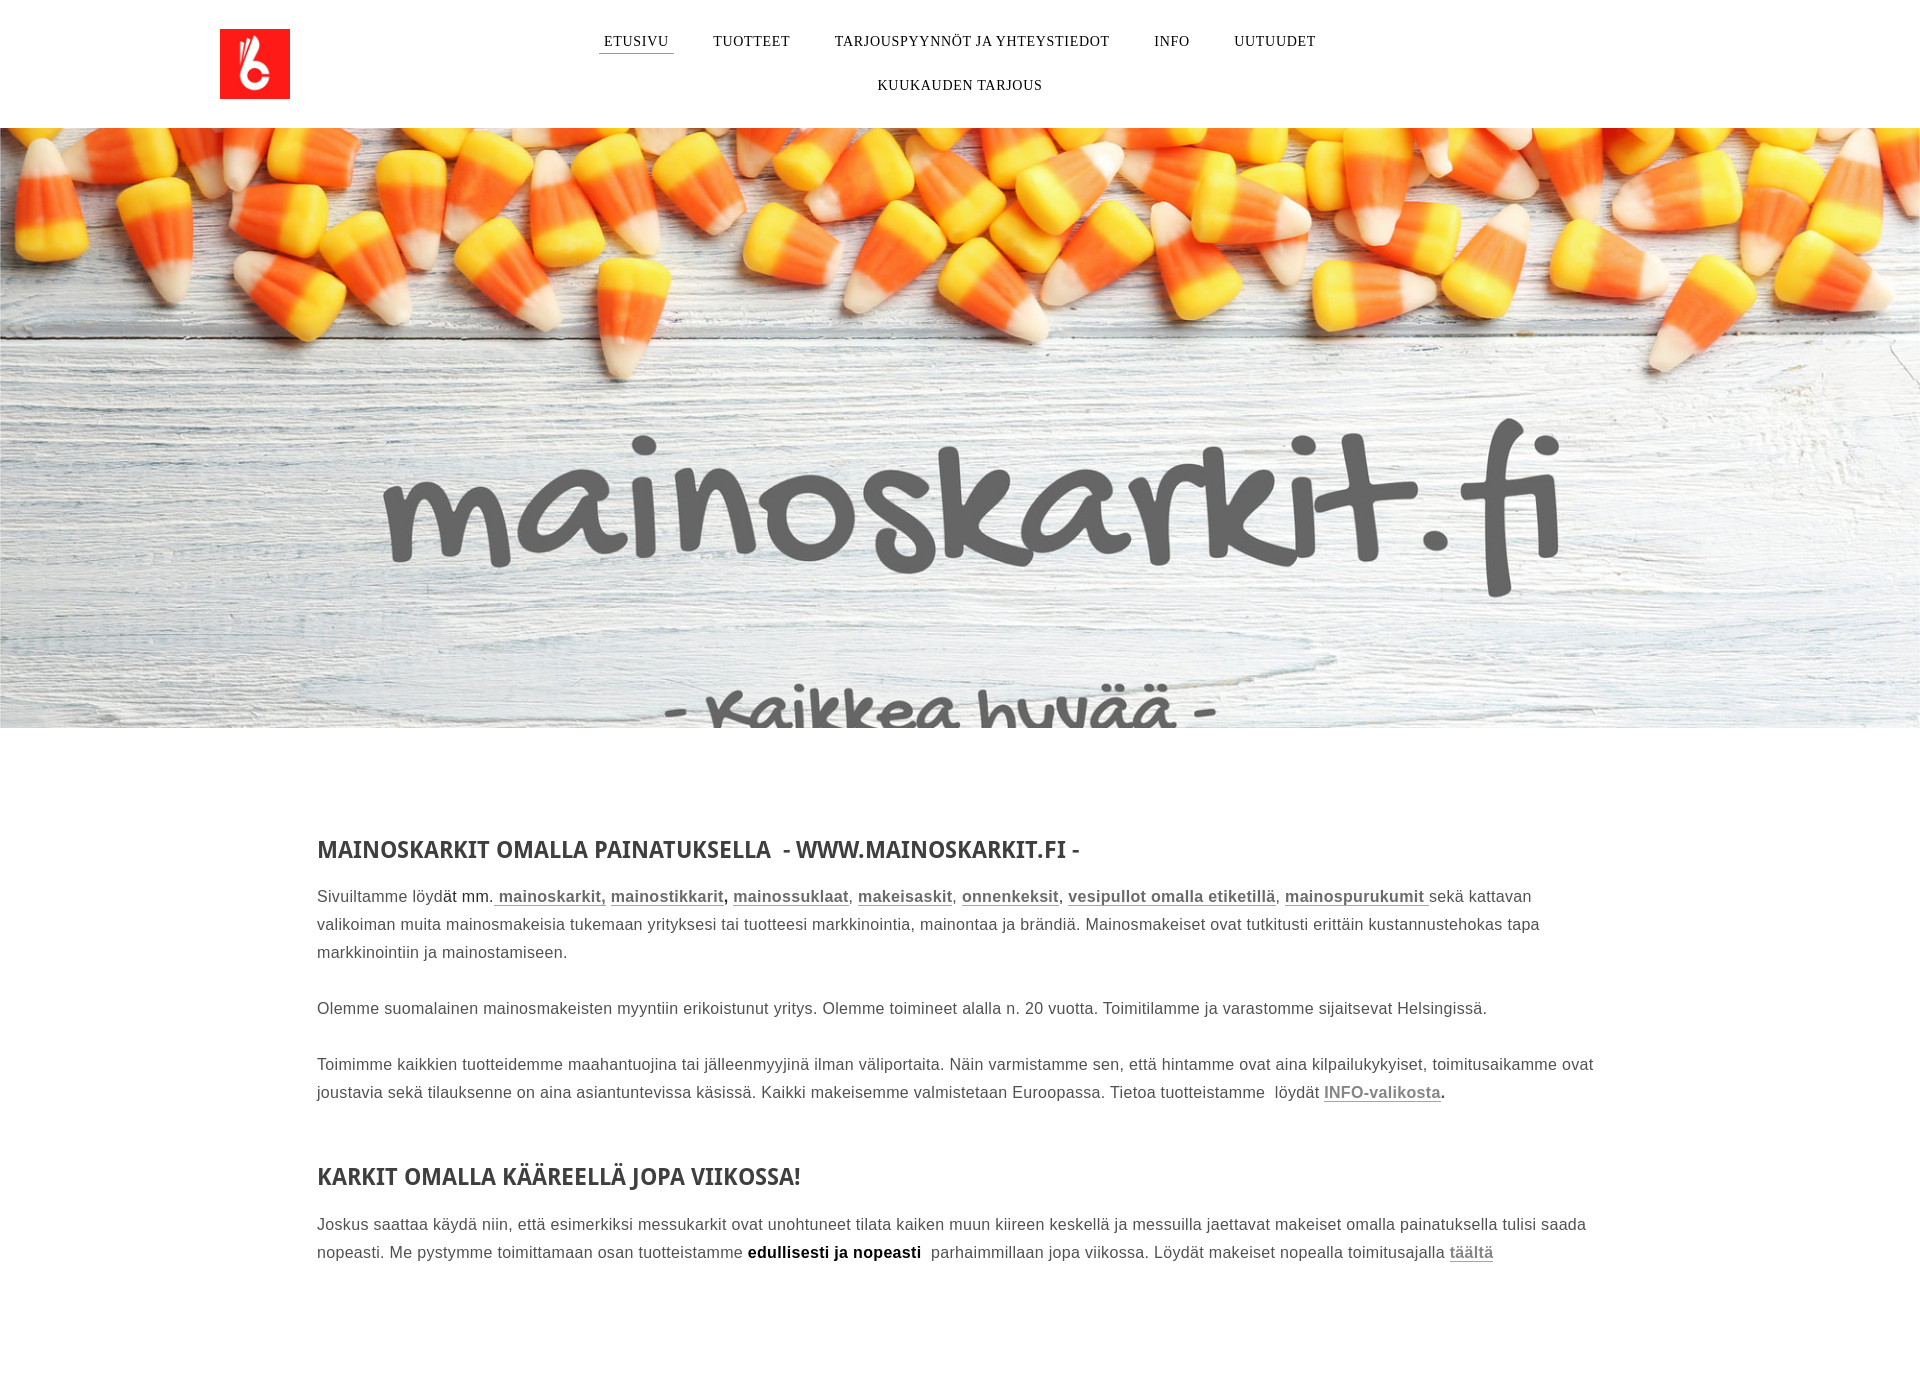 Skärmdump för mainoskarkit.fi